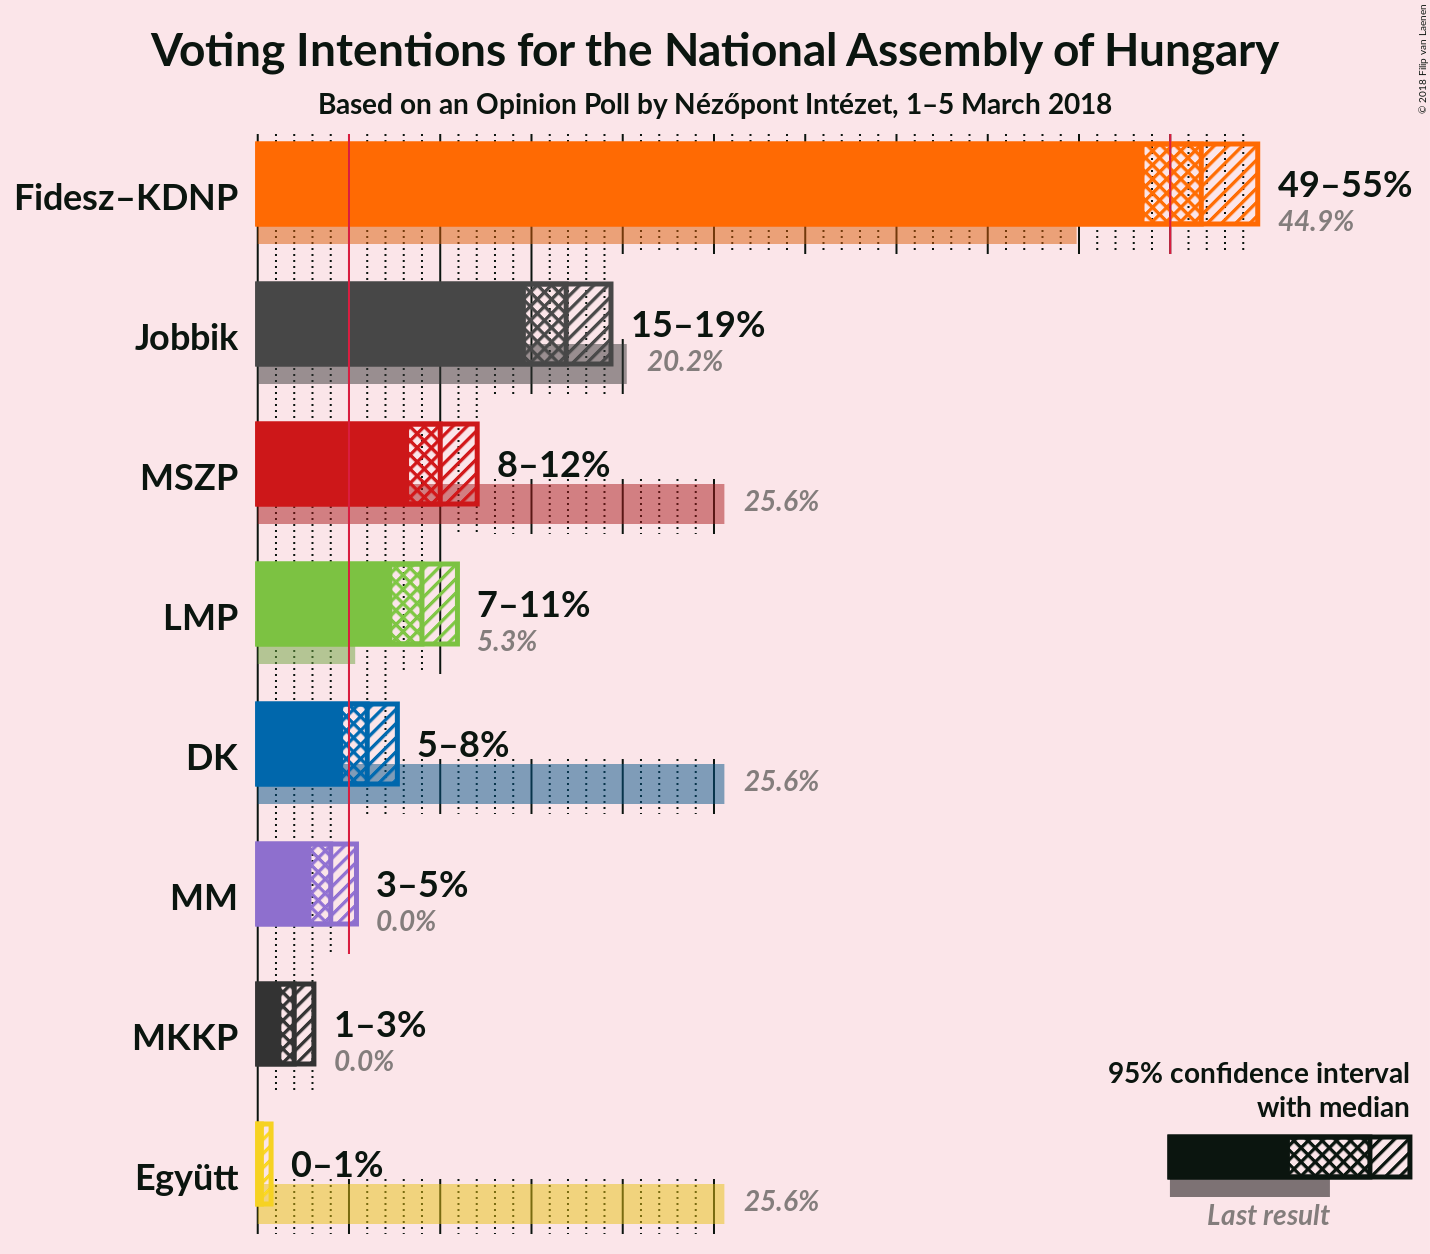 Nézőpont: Nőtt a FideszKDNP előnye